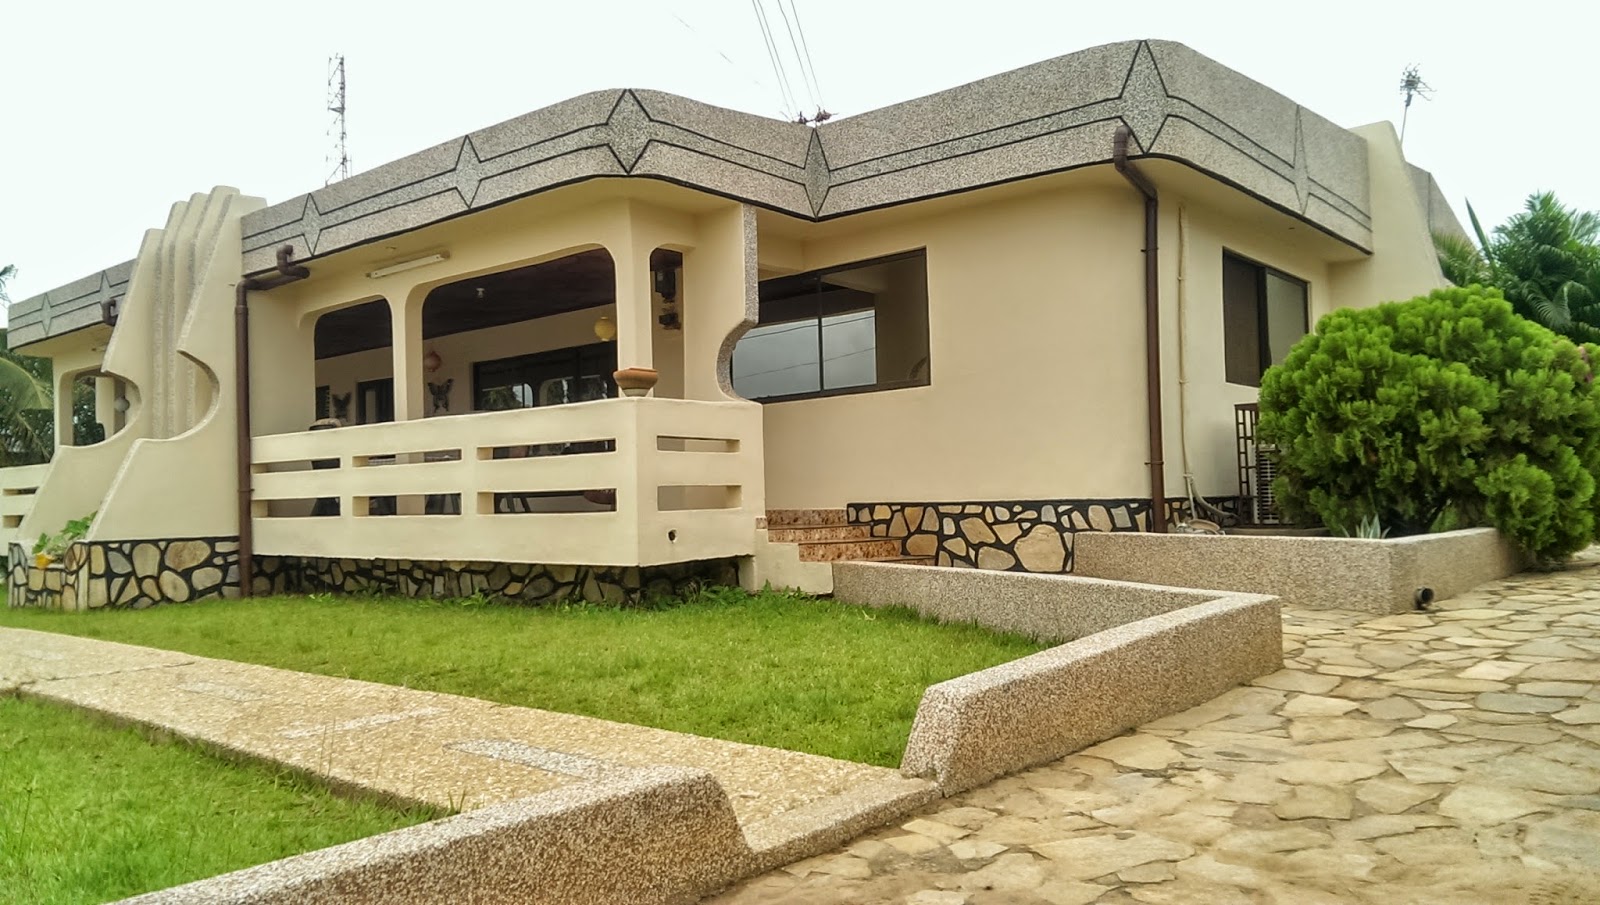 SPHYNX Nungua, Accra Ghana. House for sale